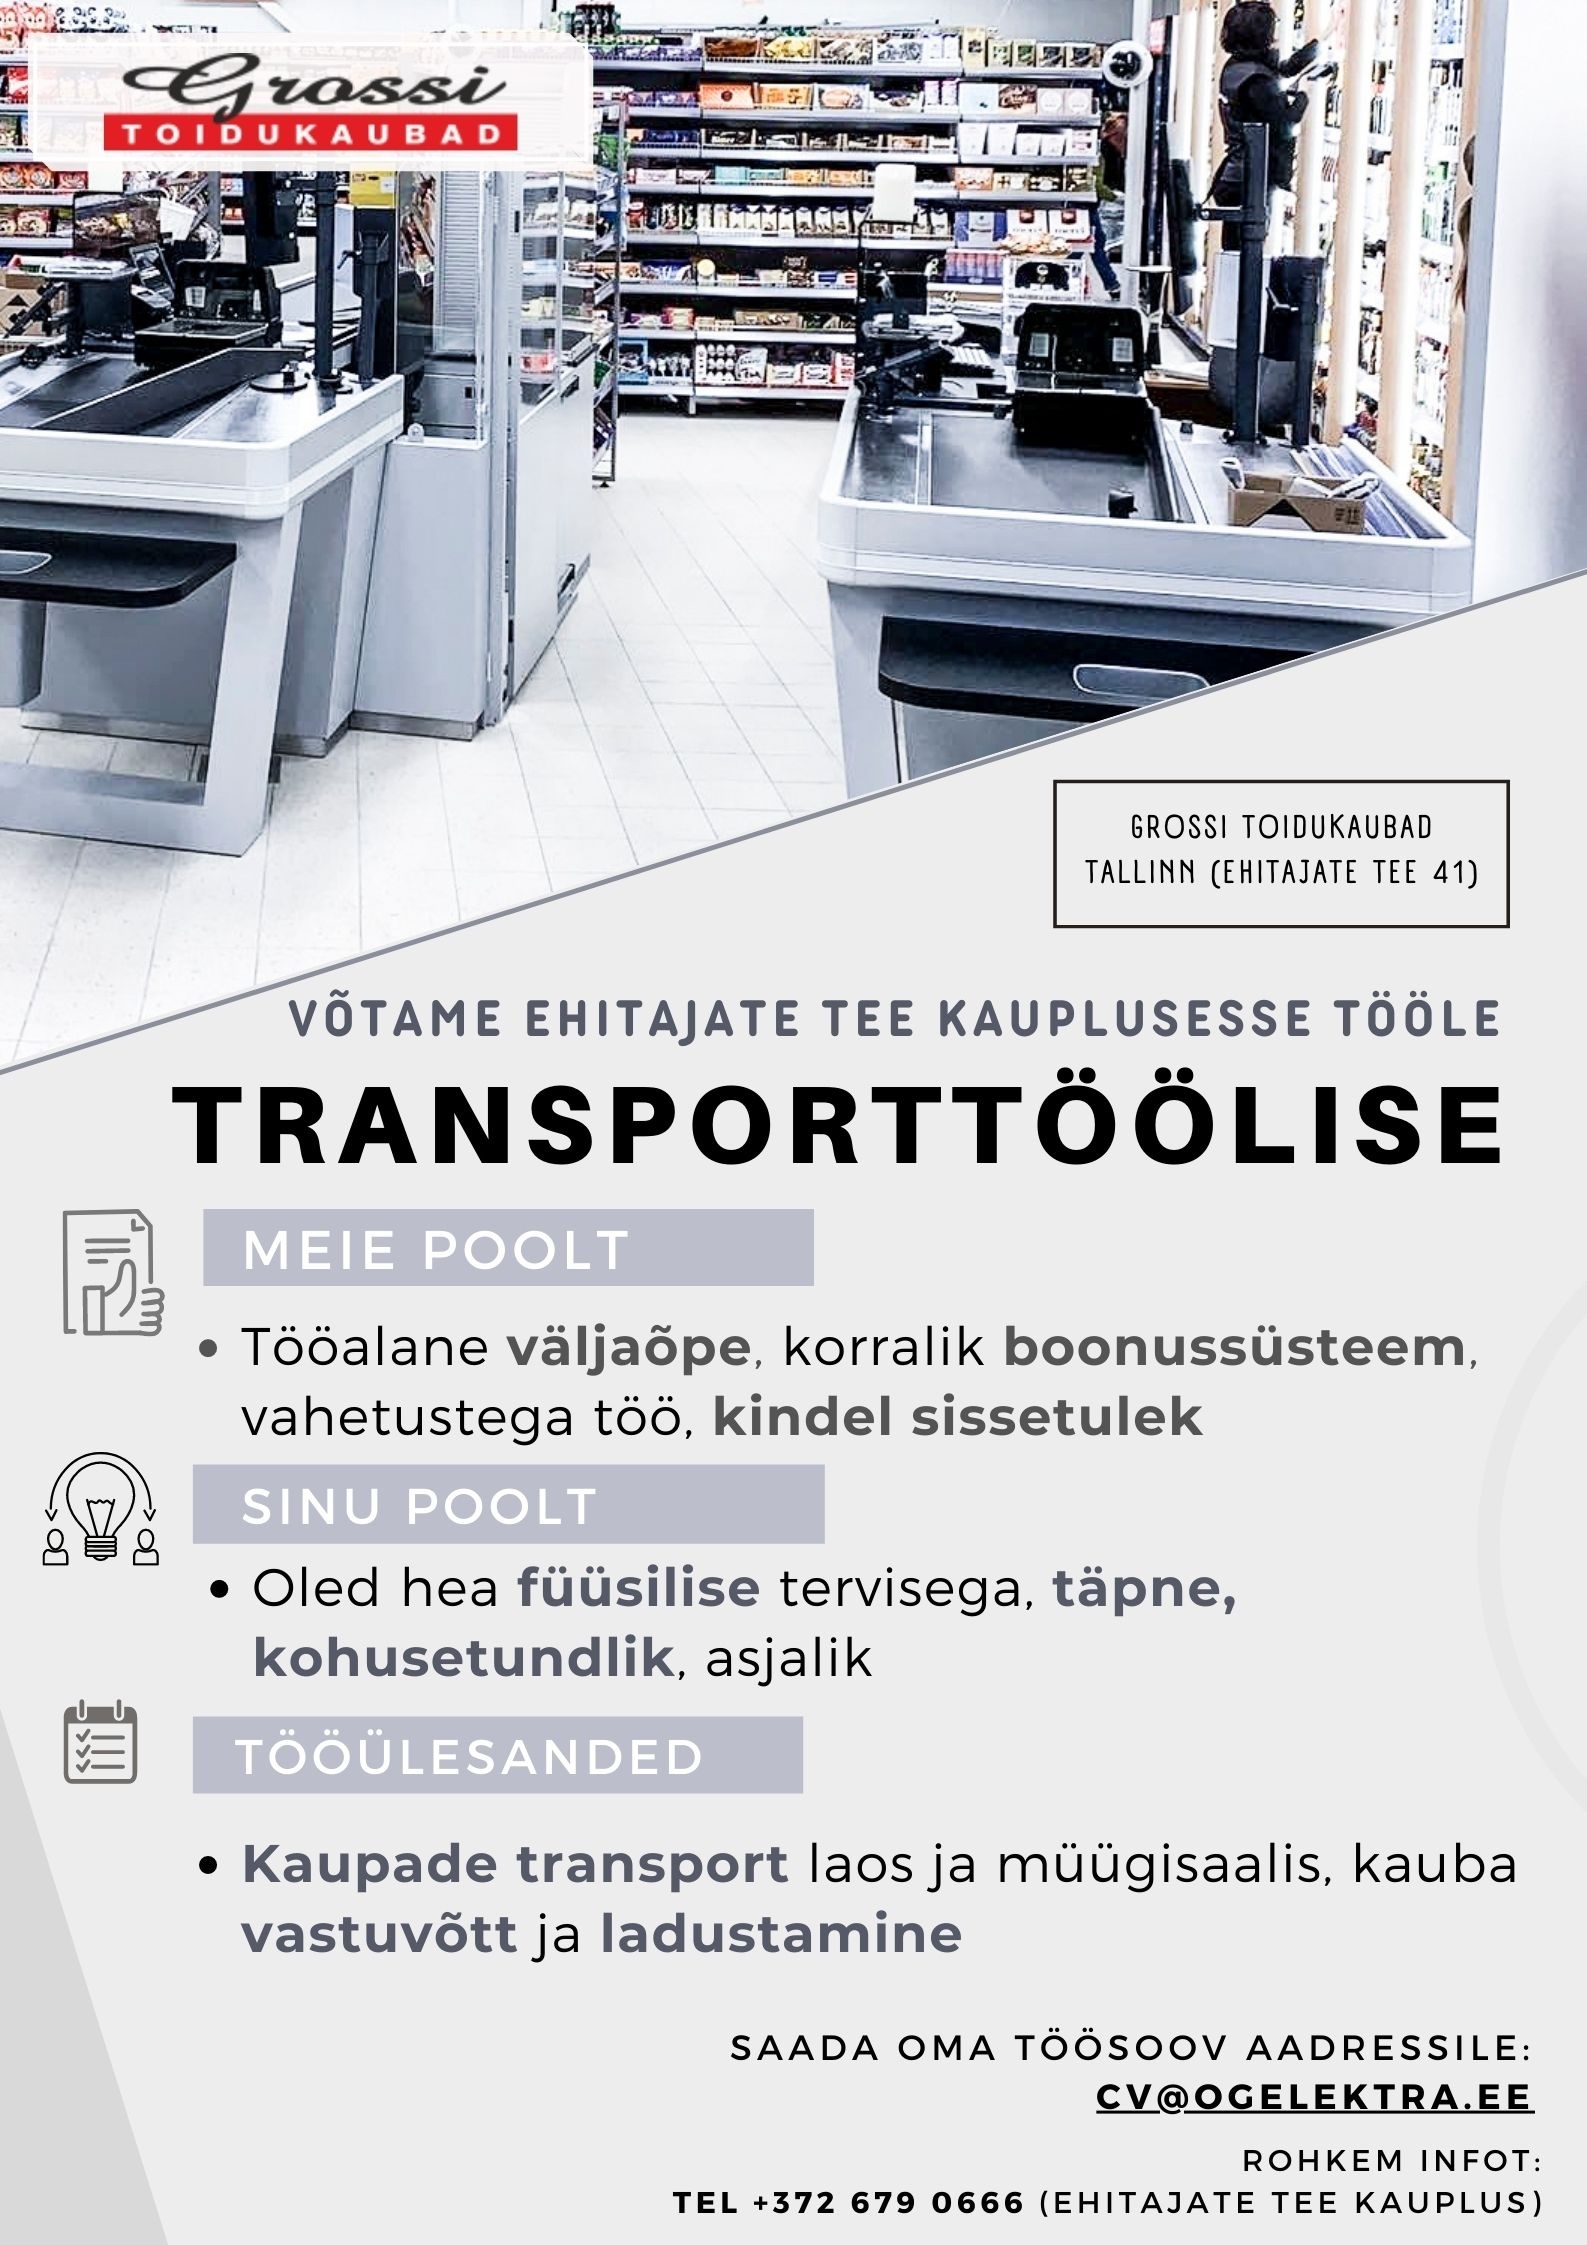 CVKeskus.ee klient Transporttööline (Ehitajate tee)